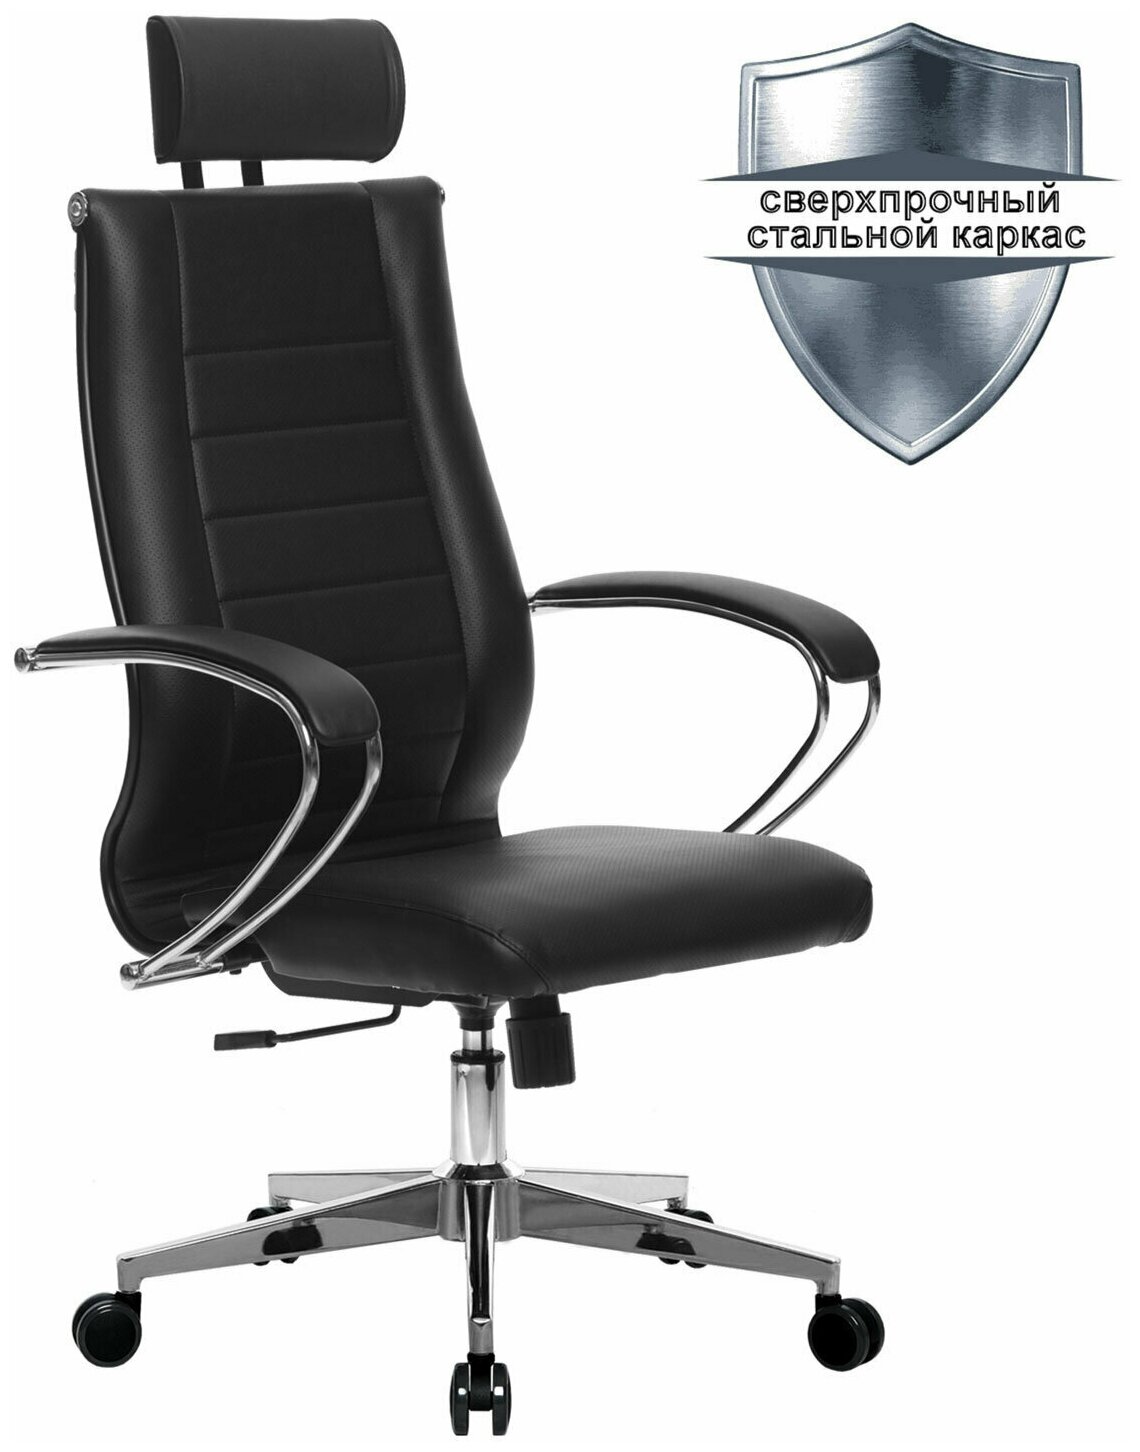 Кресло офисное метта "К-33-2D" хром, рецик. кожа, подголовник, сиденье и спинка мягкие, черное